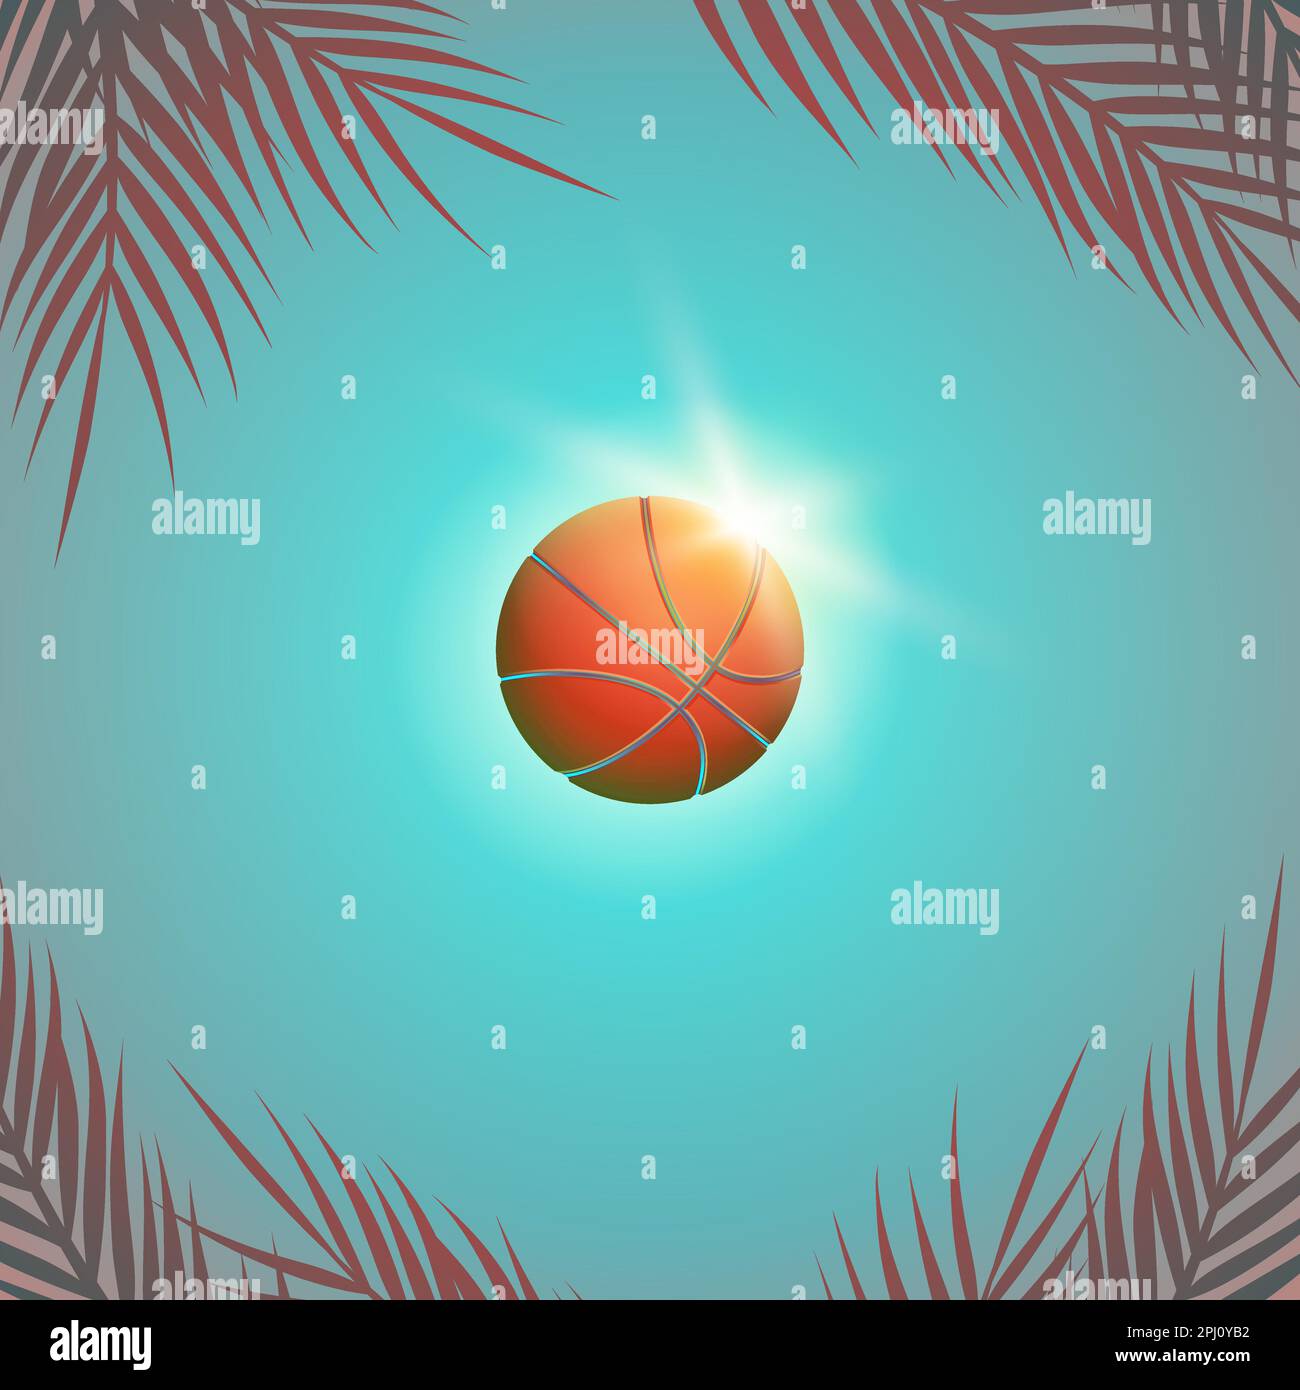 Basketballball in der Luft bei Sonne und blauem Himmel. Helle Illustration eines Basketballspiels im Sommer mit Sonnenstrahlen und Palmenzweigen. Stock Vektor